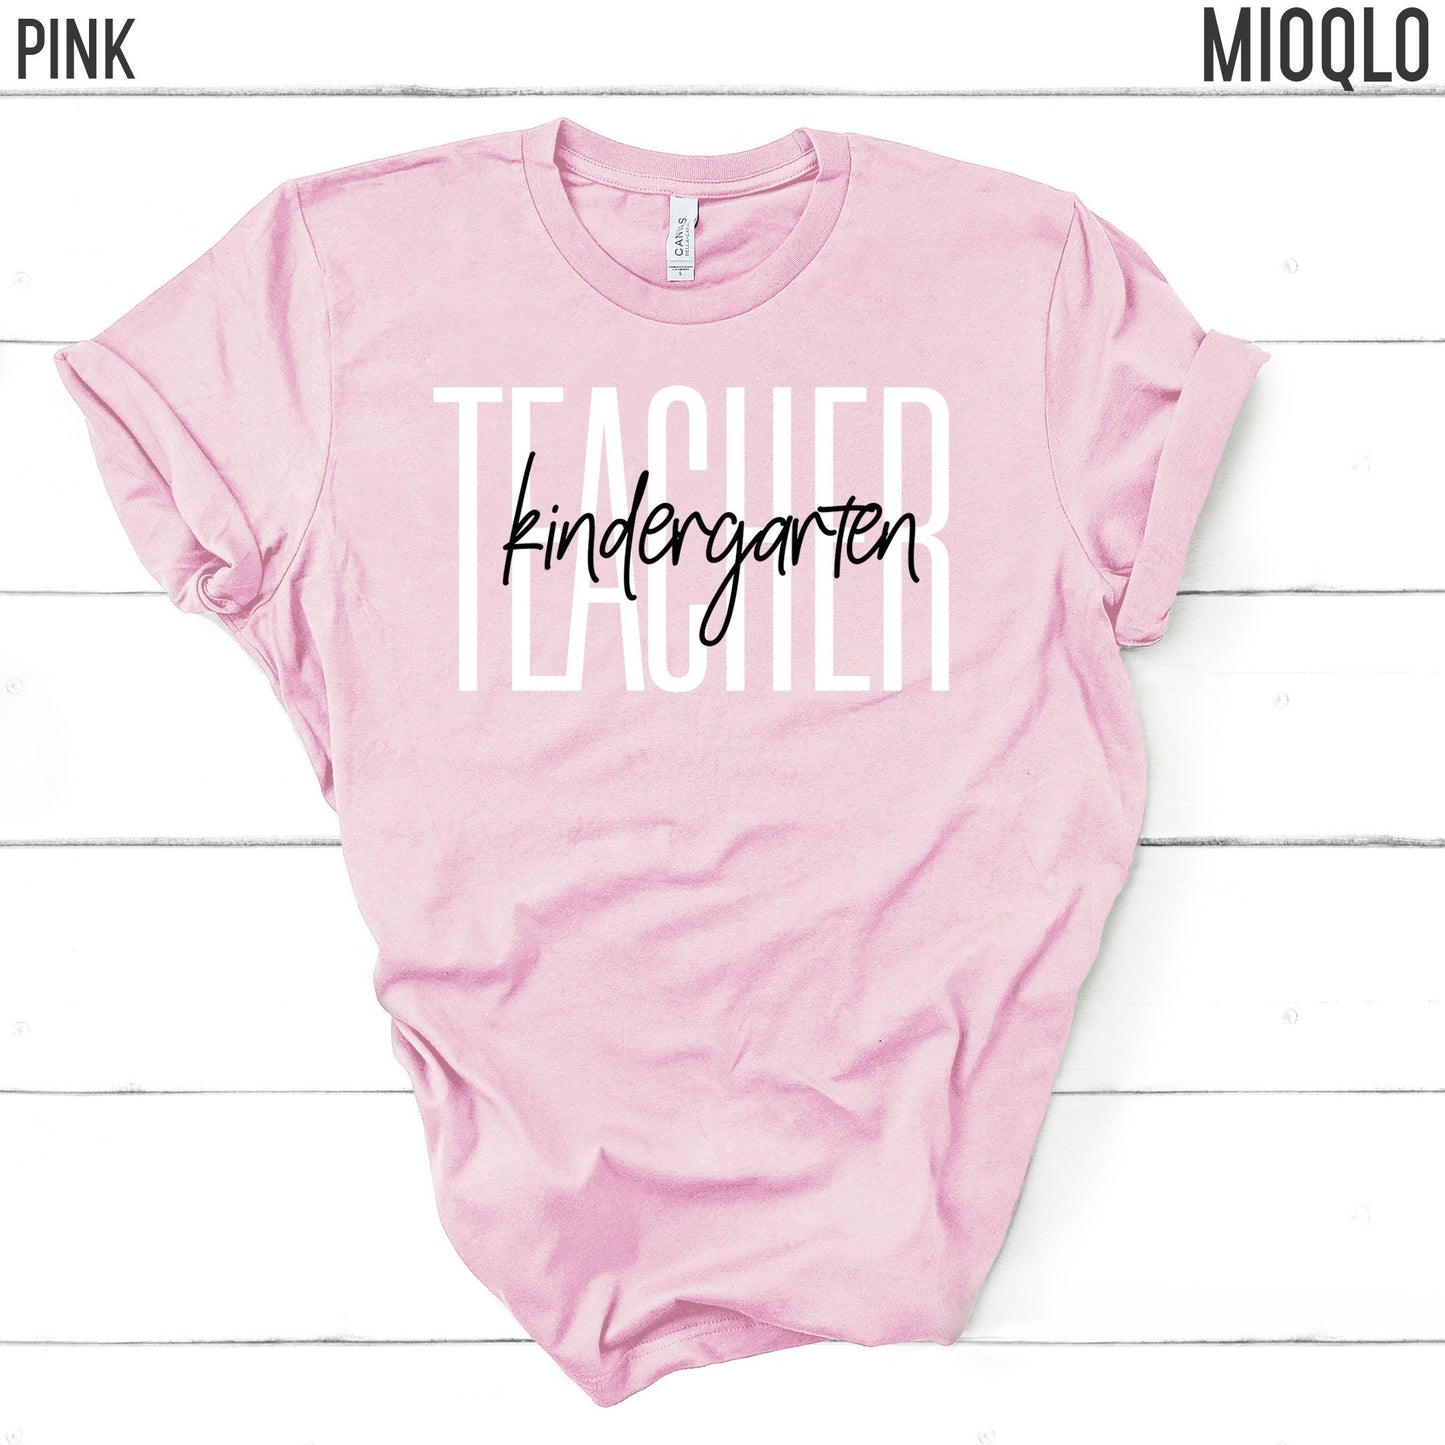 Kindergarten Teacher Shirt, Kinder Teacher Team, Cute Teacher Tee, 2021 Grade Level, Little Kids Children Elementary Teach School Spirit Tee